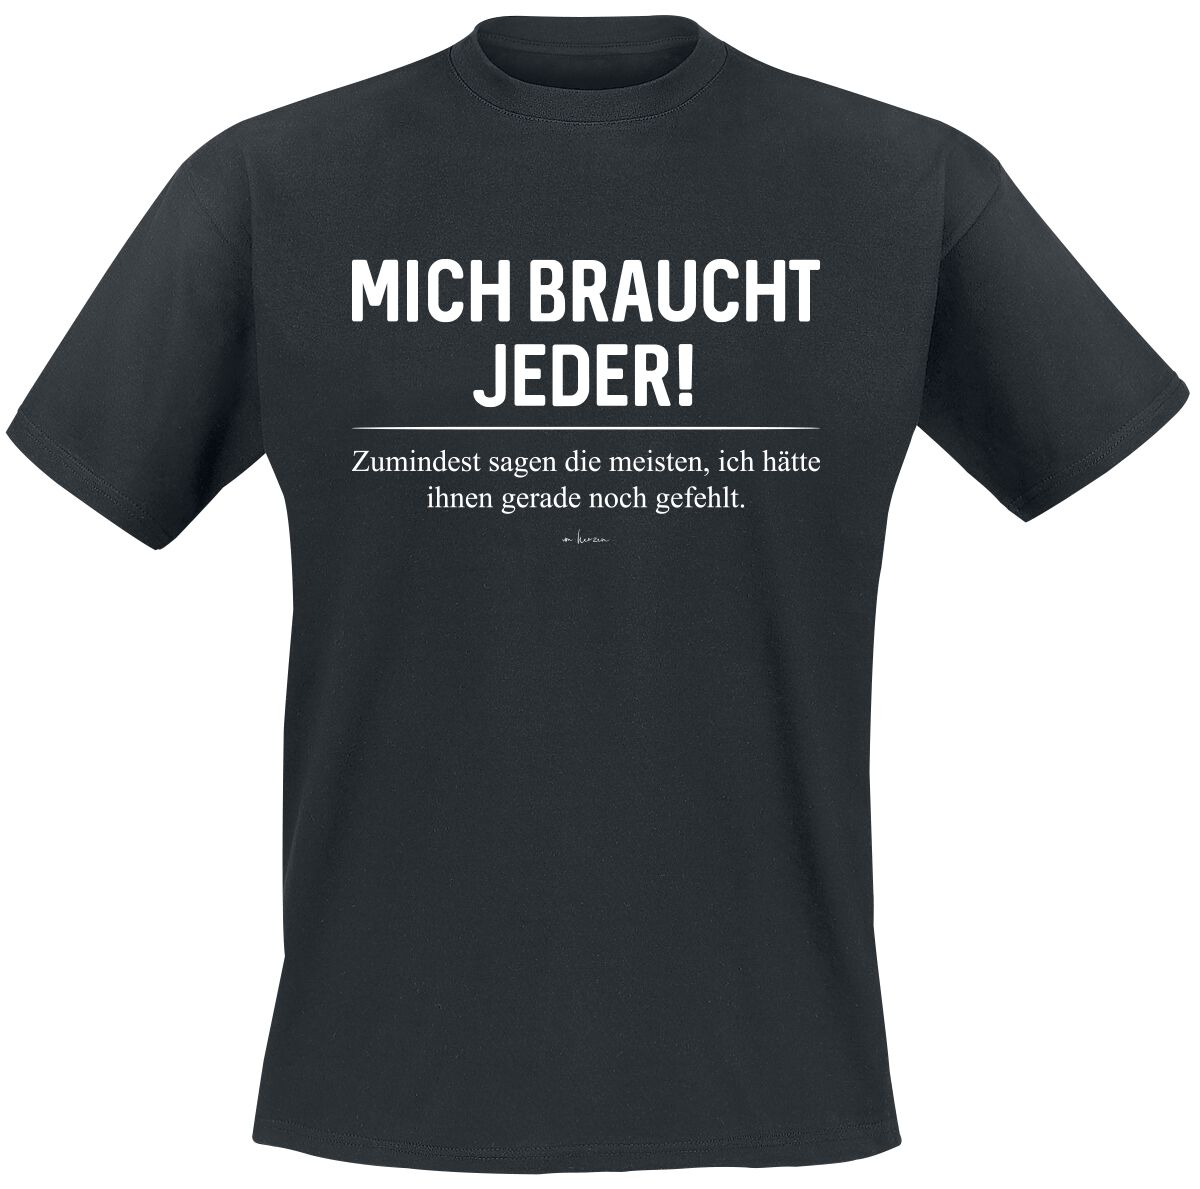 Sprüche T-Shirt - Mich braucht jeder - S bis 3XL - für Männer - Größe 3XL - schwarz